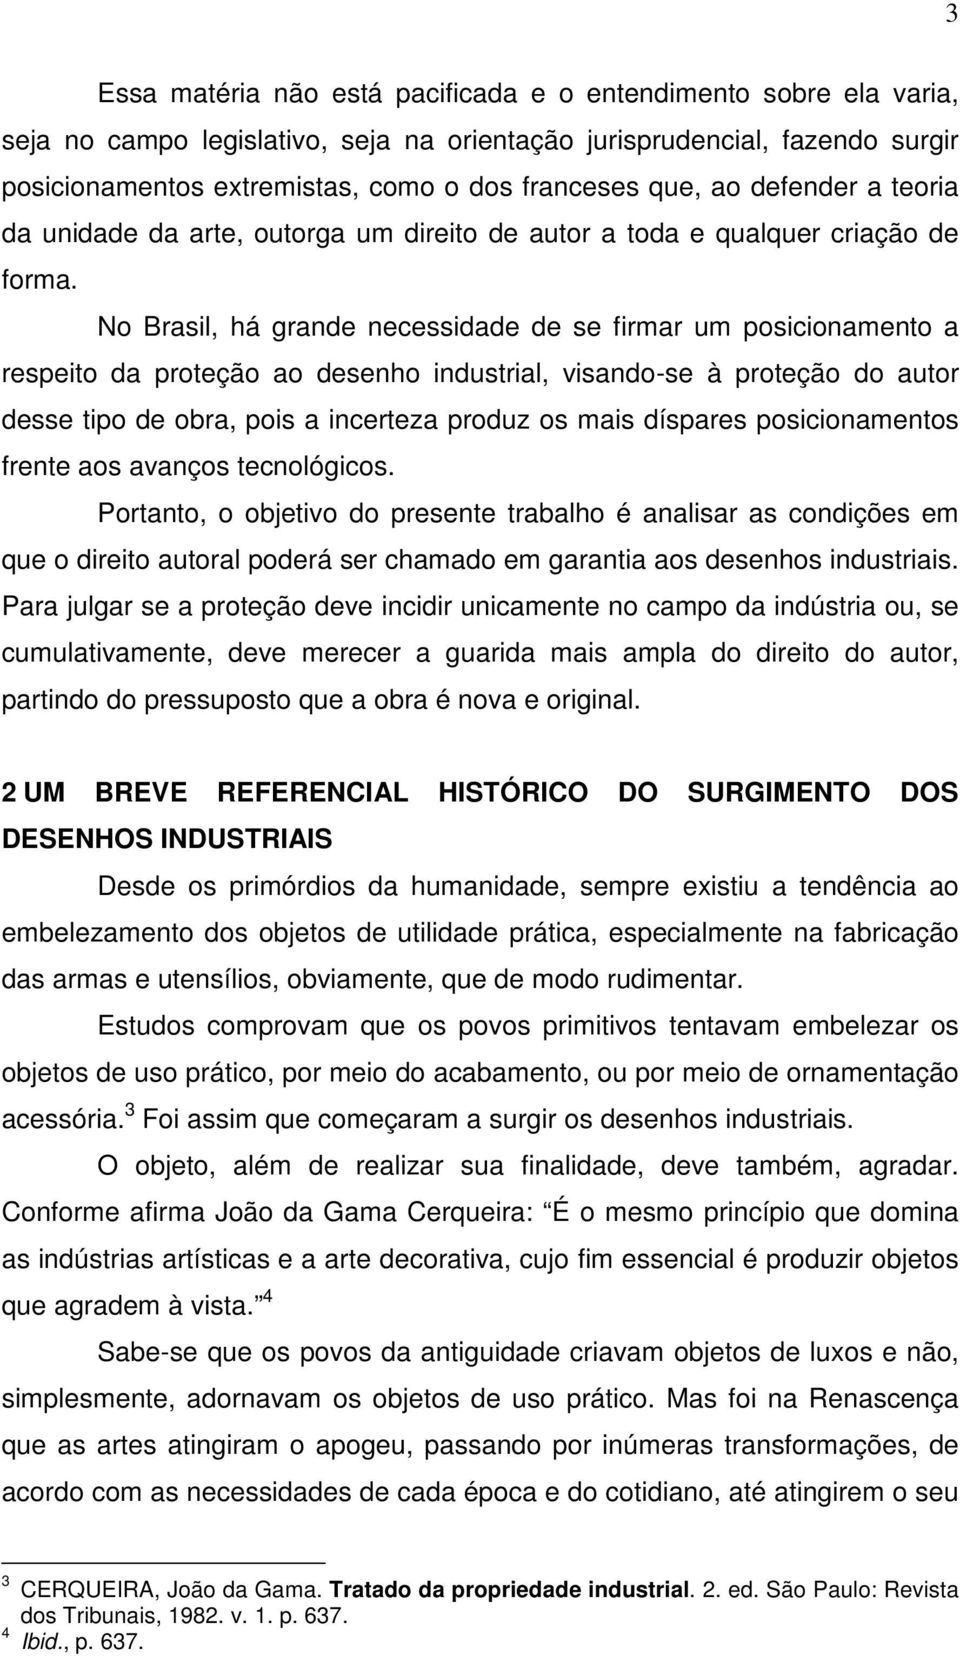 No Brasil, há grande necessidade de se firmar um posicionamento a respeito da proteção ao desenho industrial, visando-se à proteção do autor desse tipo de obra, pois a incerteza produz os mais